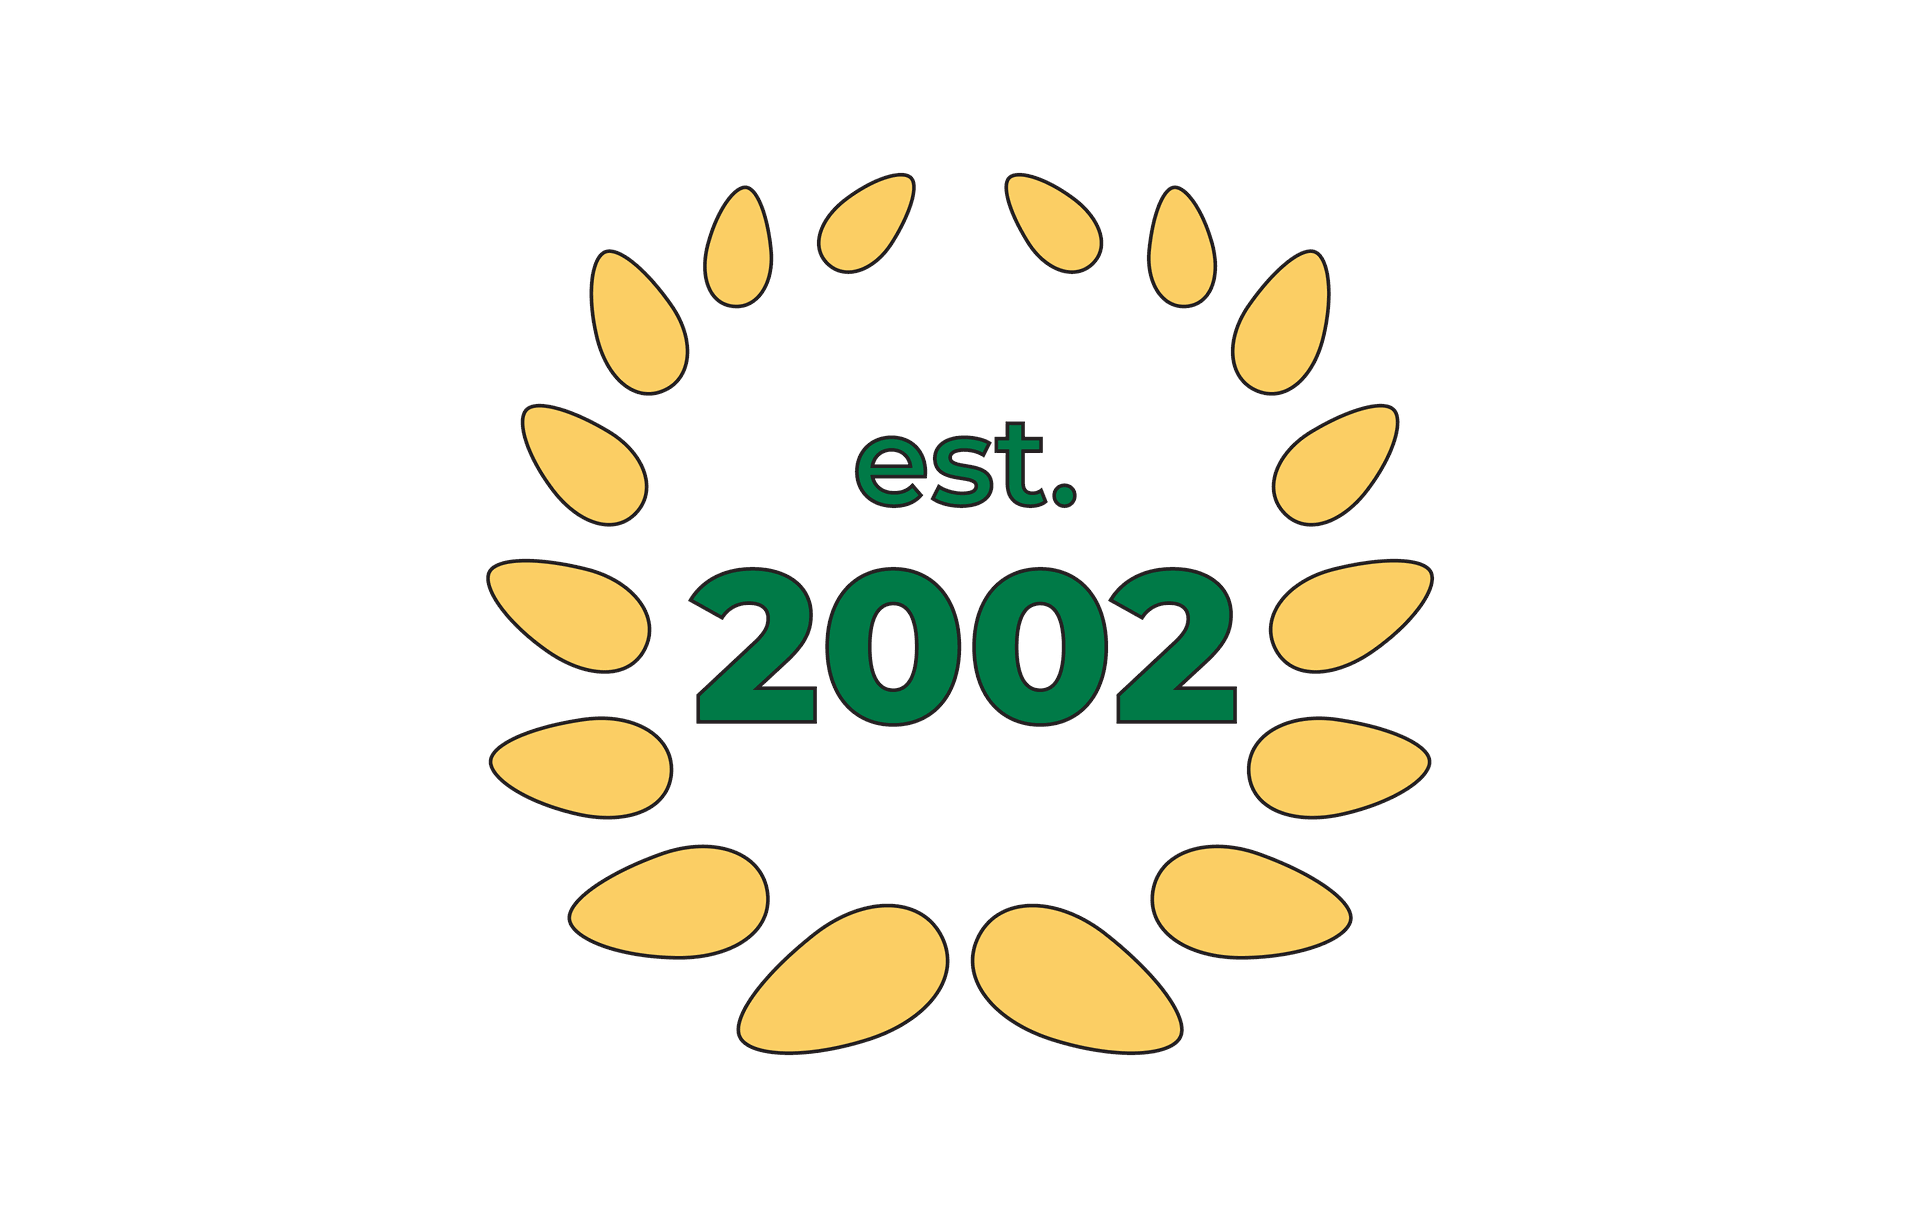 Established 2002